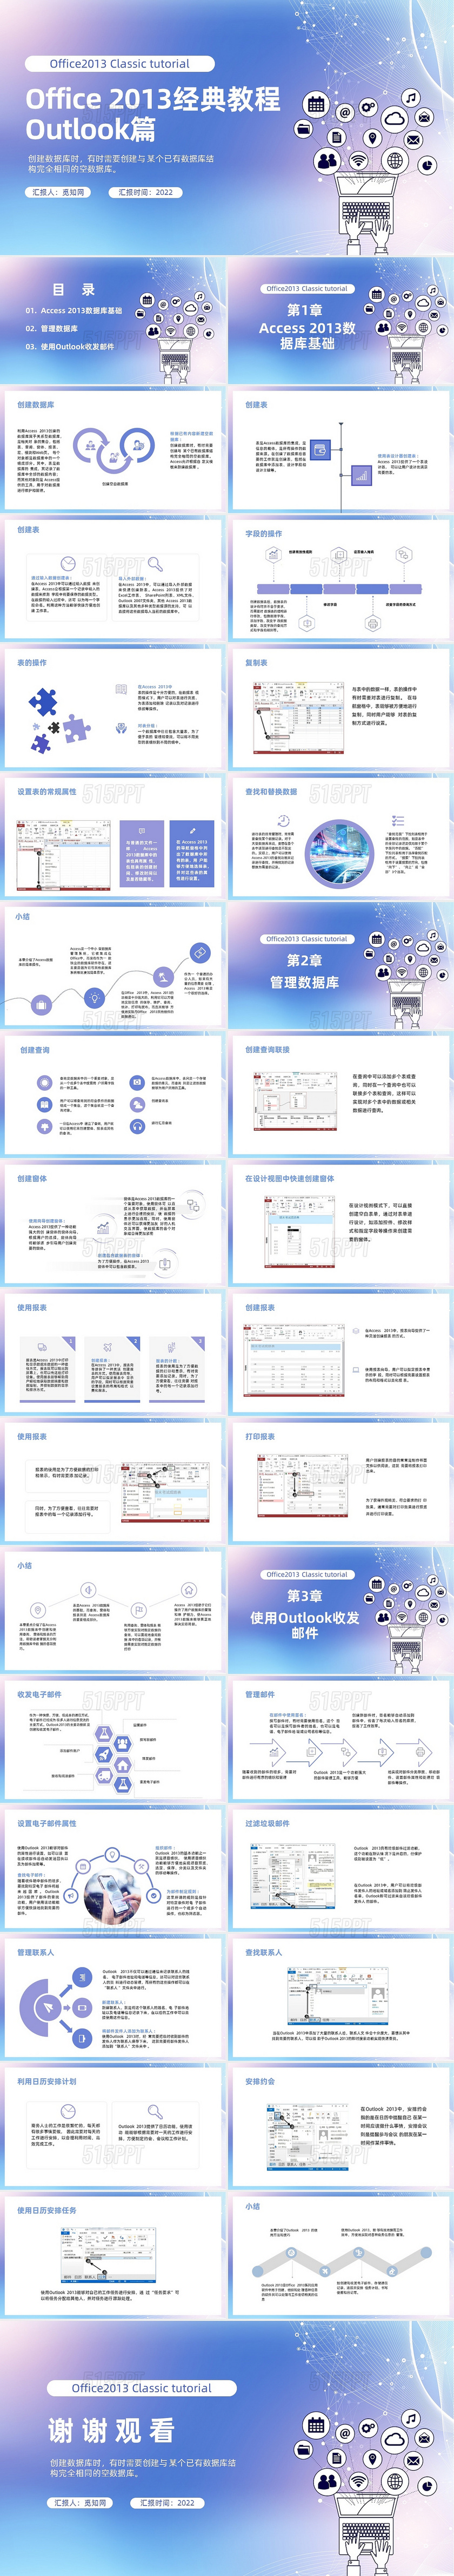 蓝色紫色简约office2013教程OutlookPPT课office 2013简单教程